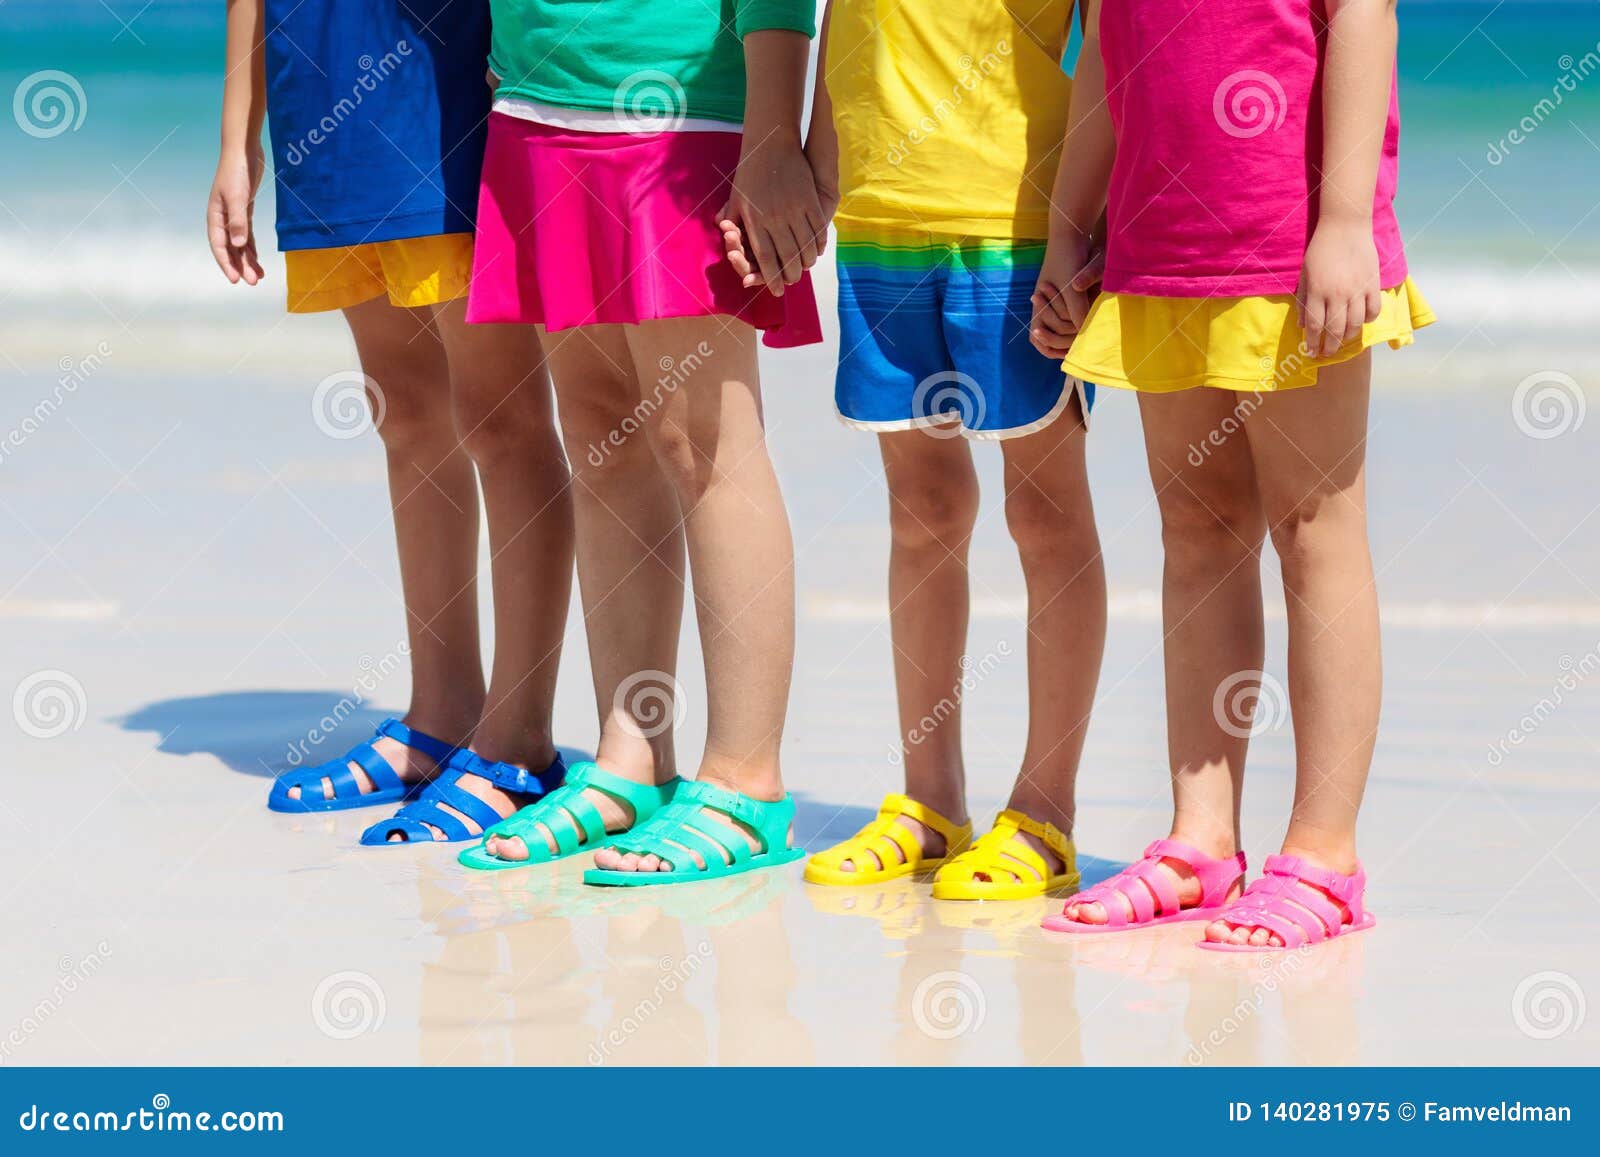 beach sea shoes